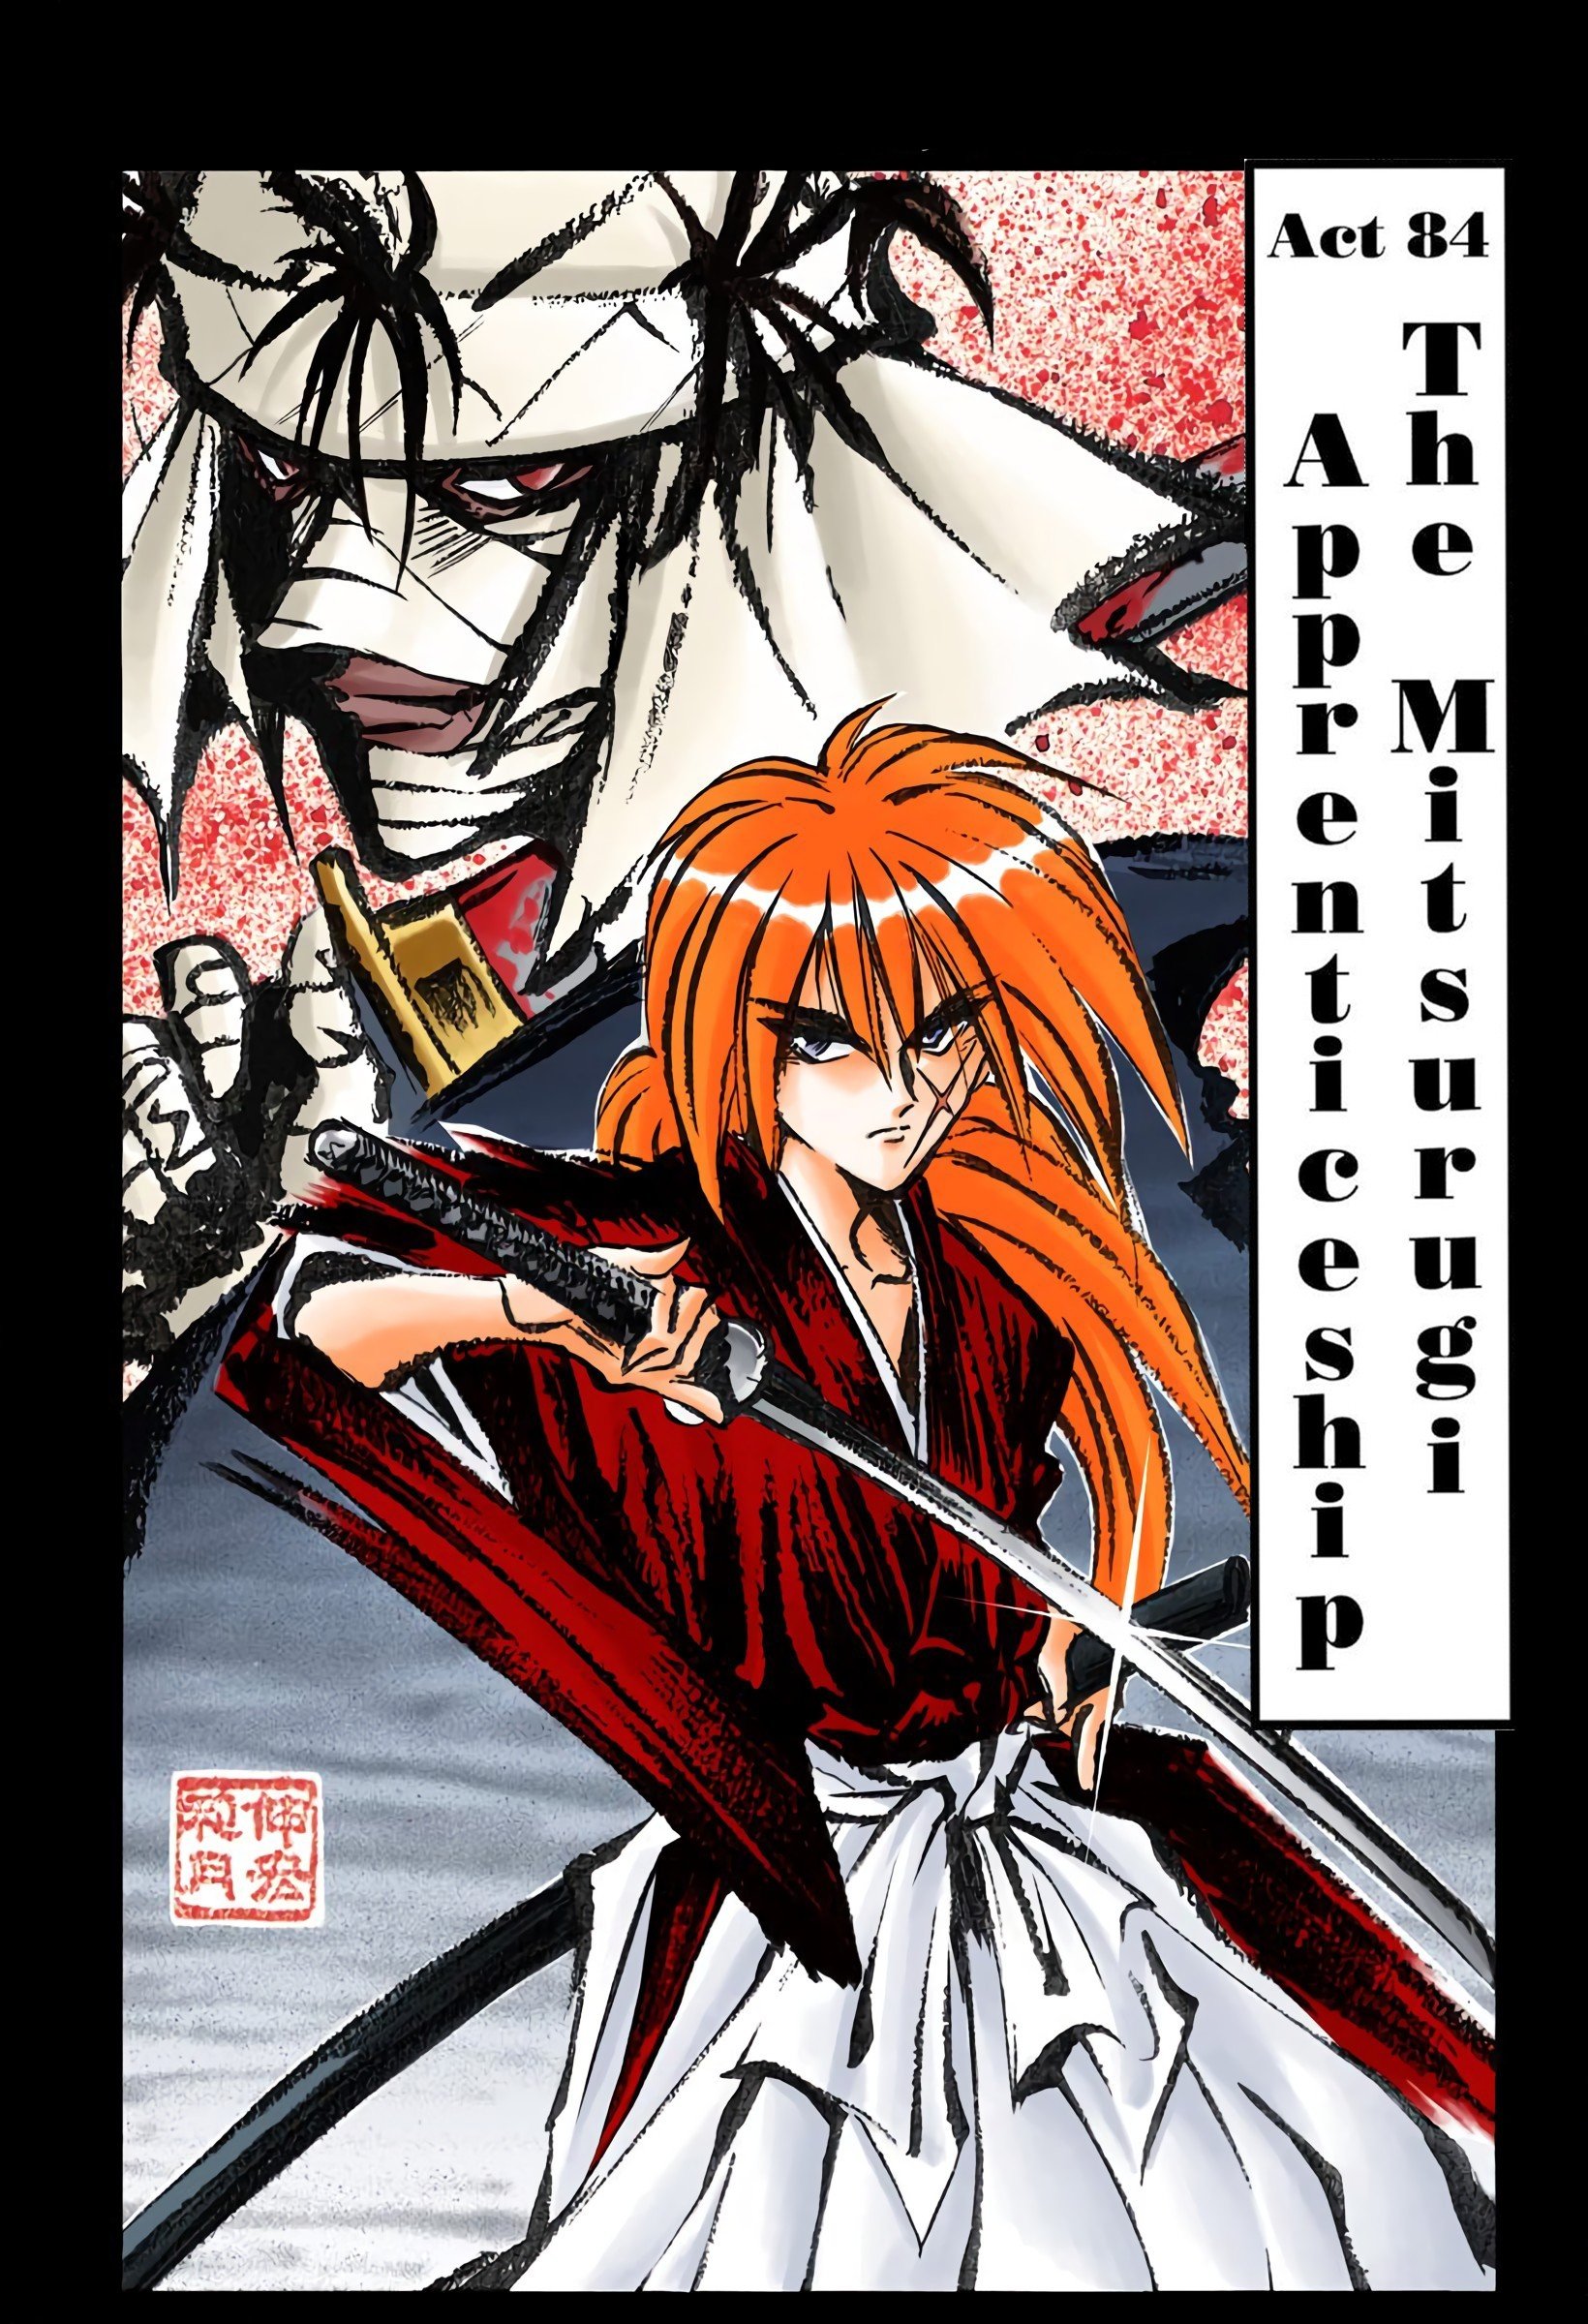 Himura Kenshin - Rurouni Kenshin - Character profile - Writeups.org